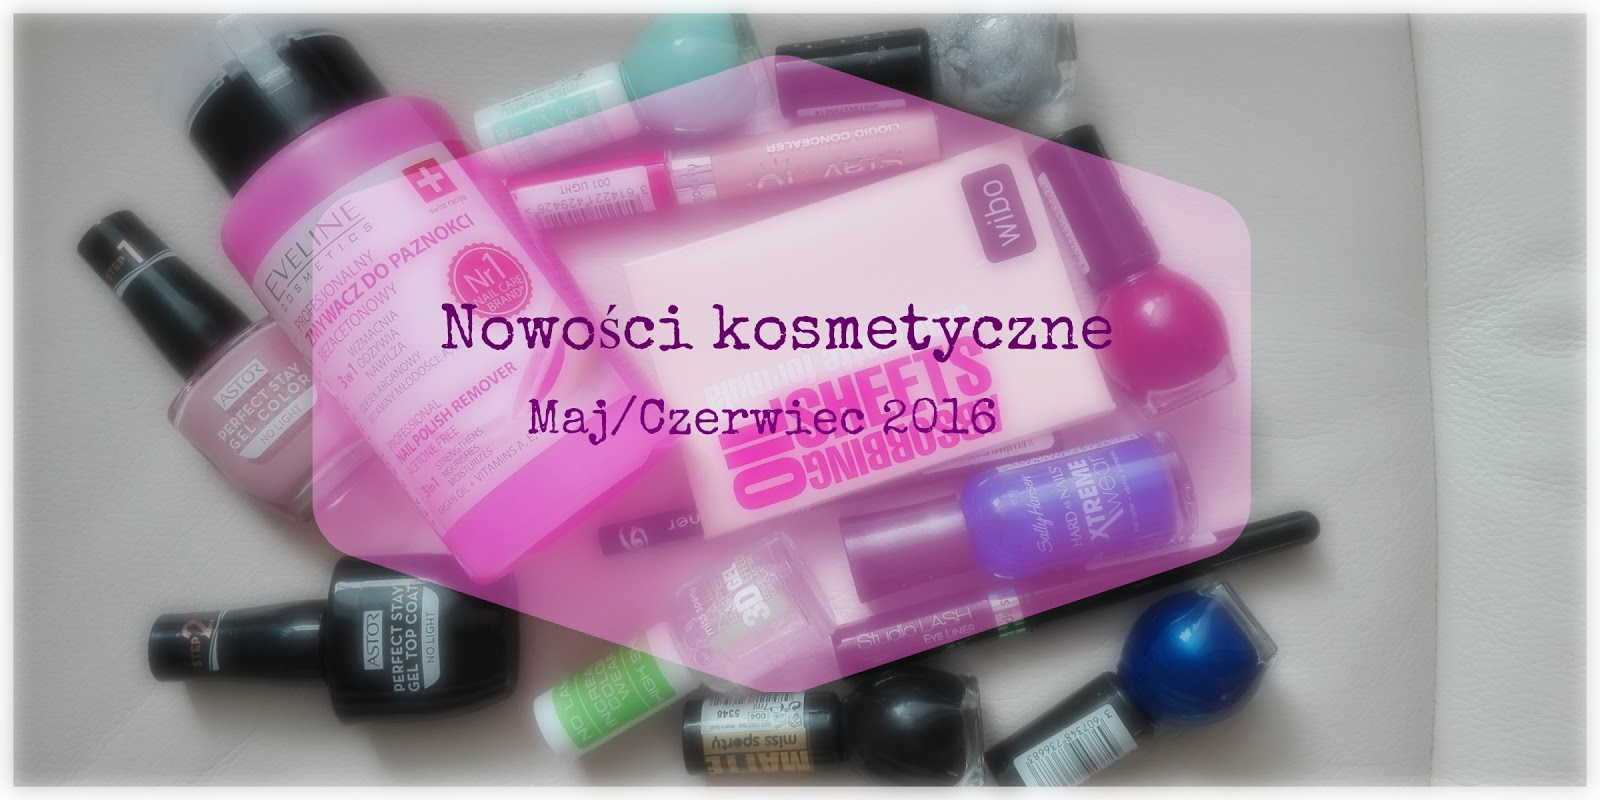 Nowości kosmetyczne Maj/Czerwiec 2016 - xevelynxo